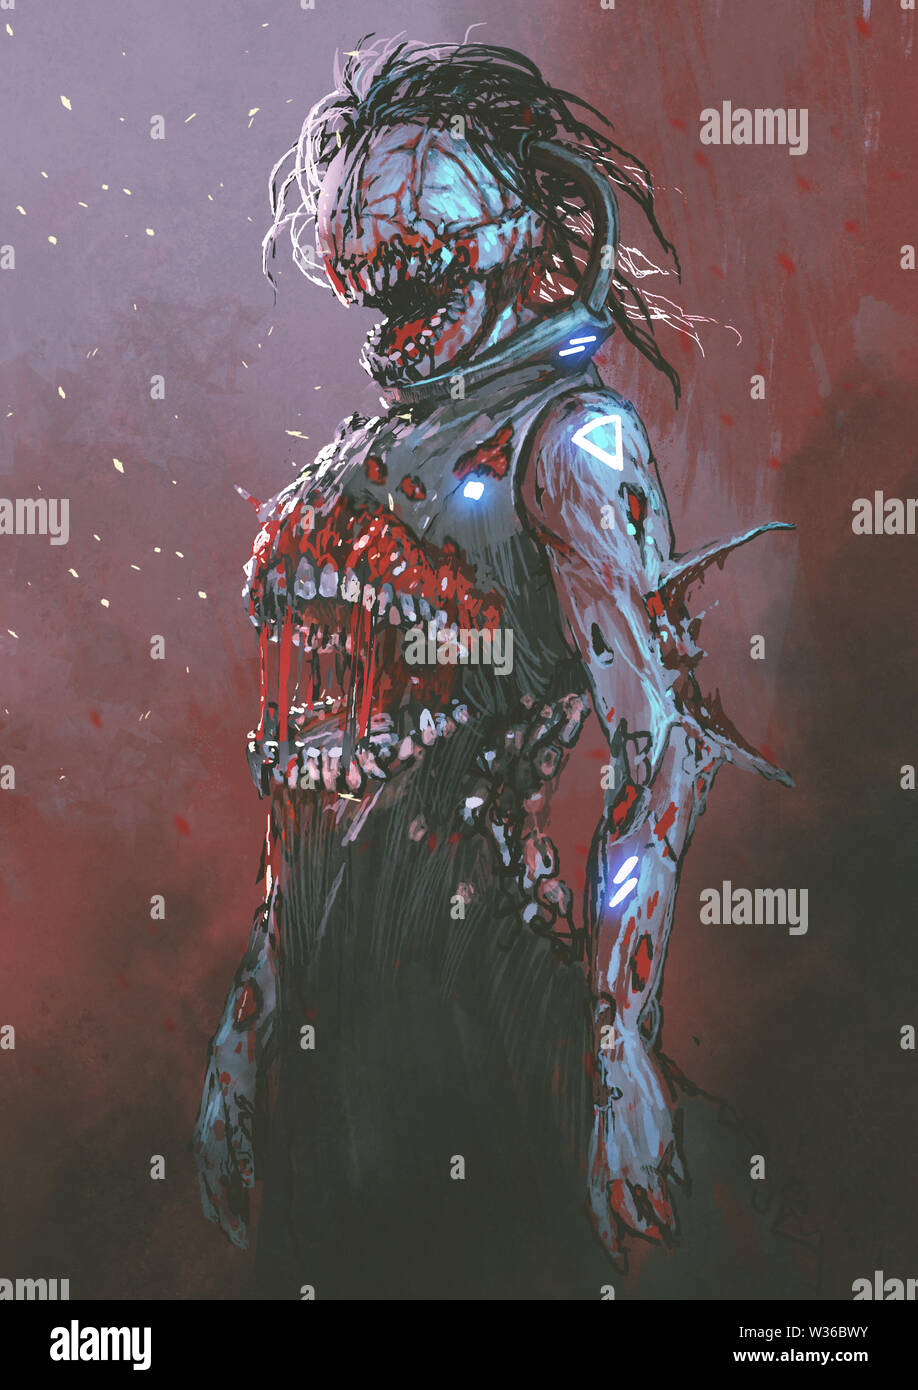 Zombie creepy avec bouche sanglante au milieu du corps, de style art numérique, illustration peinture Banque D'Images